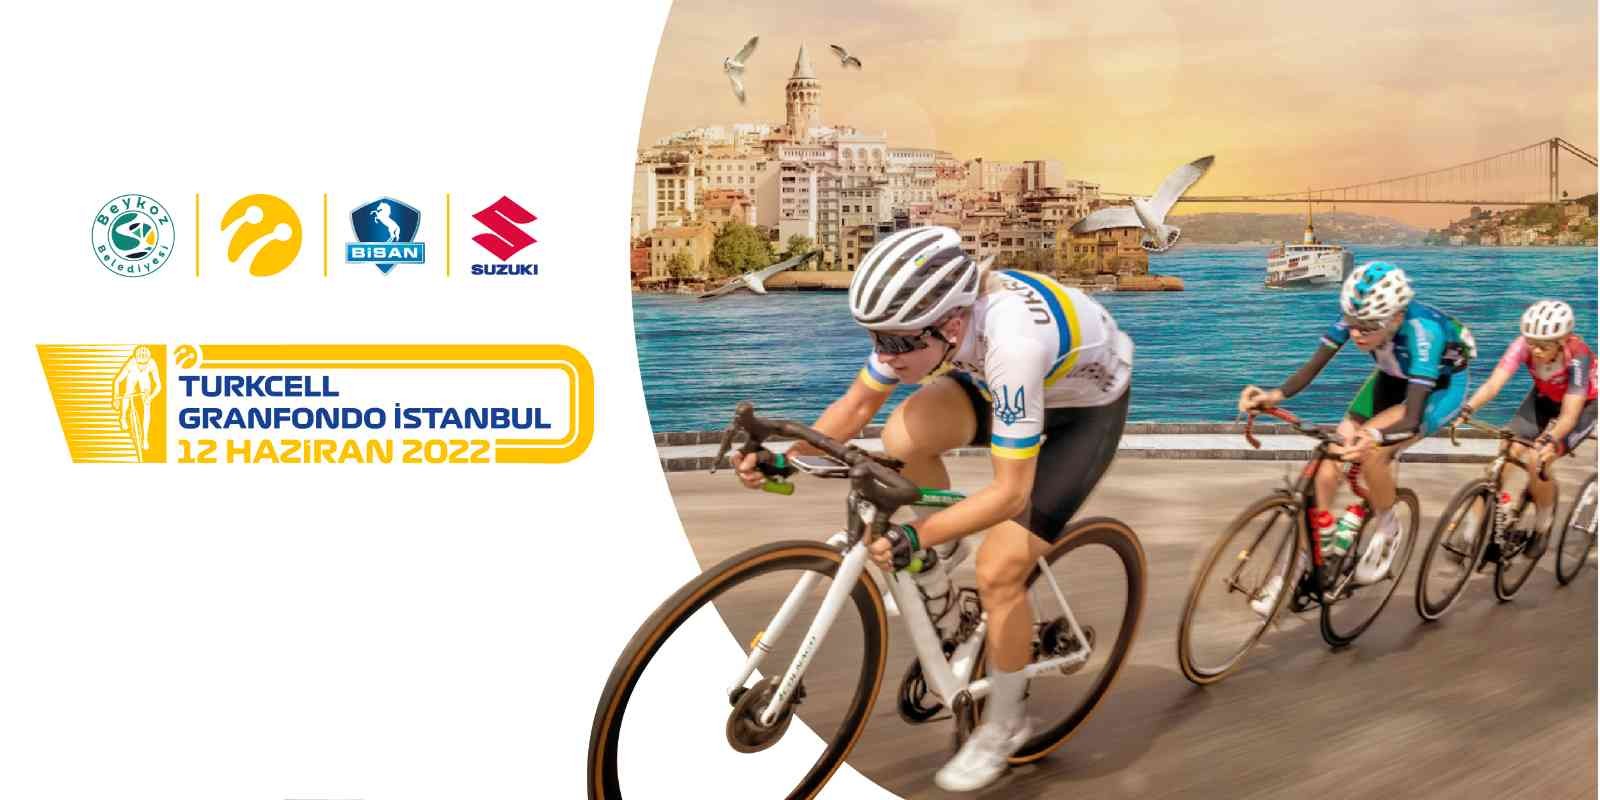 Türk bisikletine yeni bir soluk getiren GranFondo Yol Bisiklet Yarışı, 12 Haziran Pazar günü, Beykoz Belediyesi’nin katkılarıyla ...